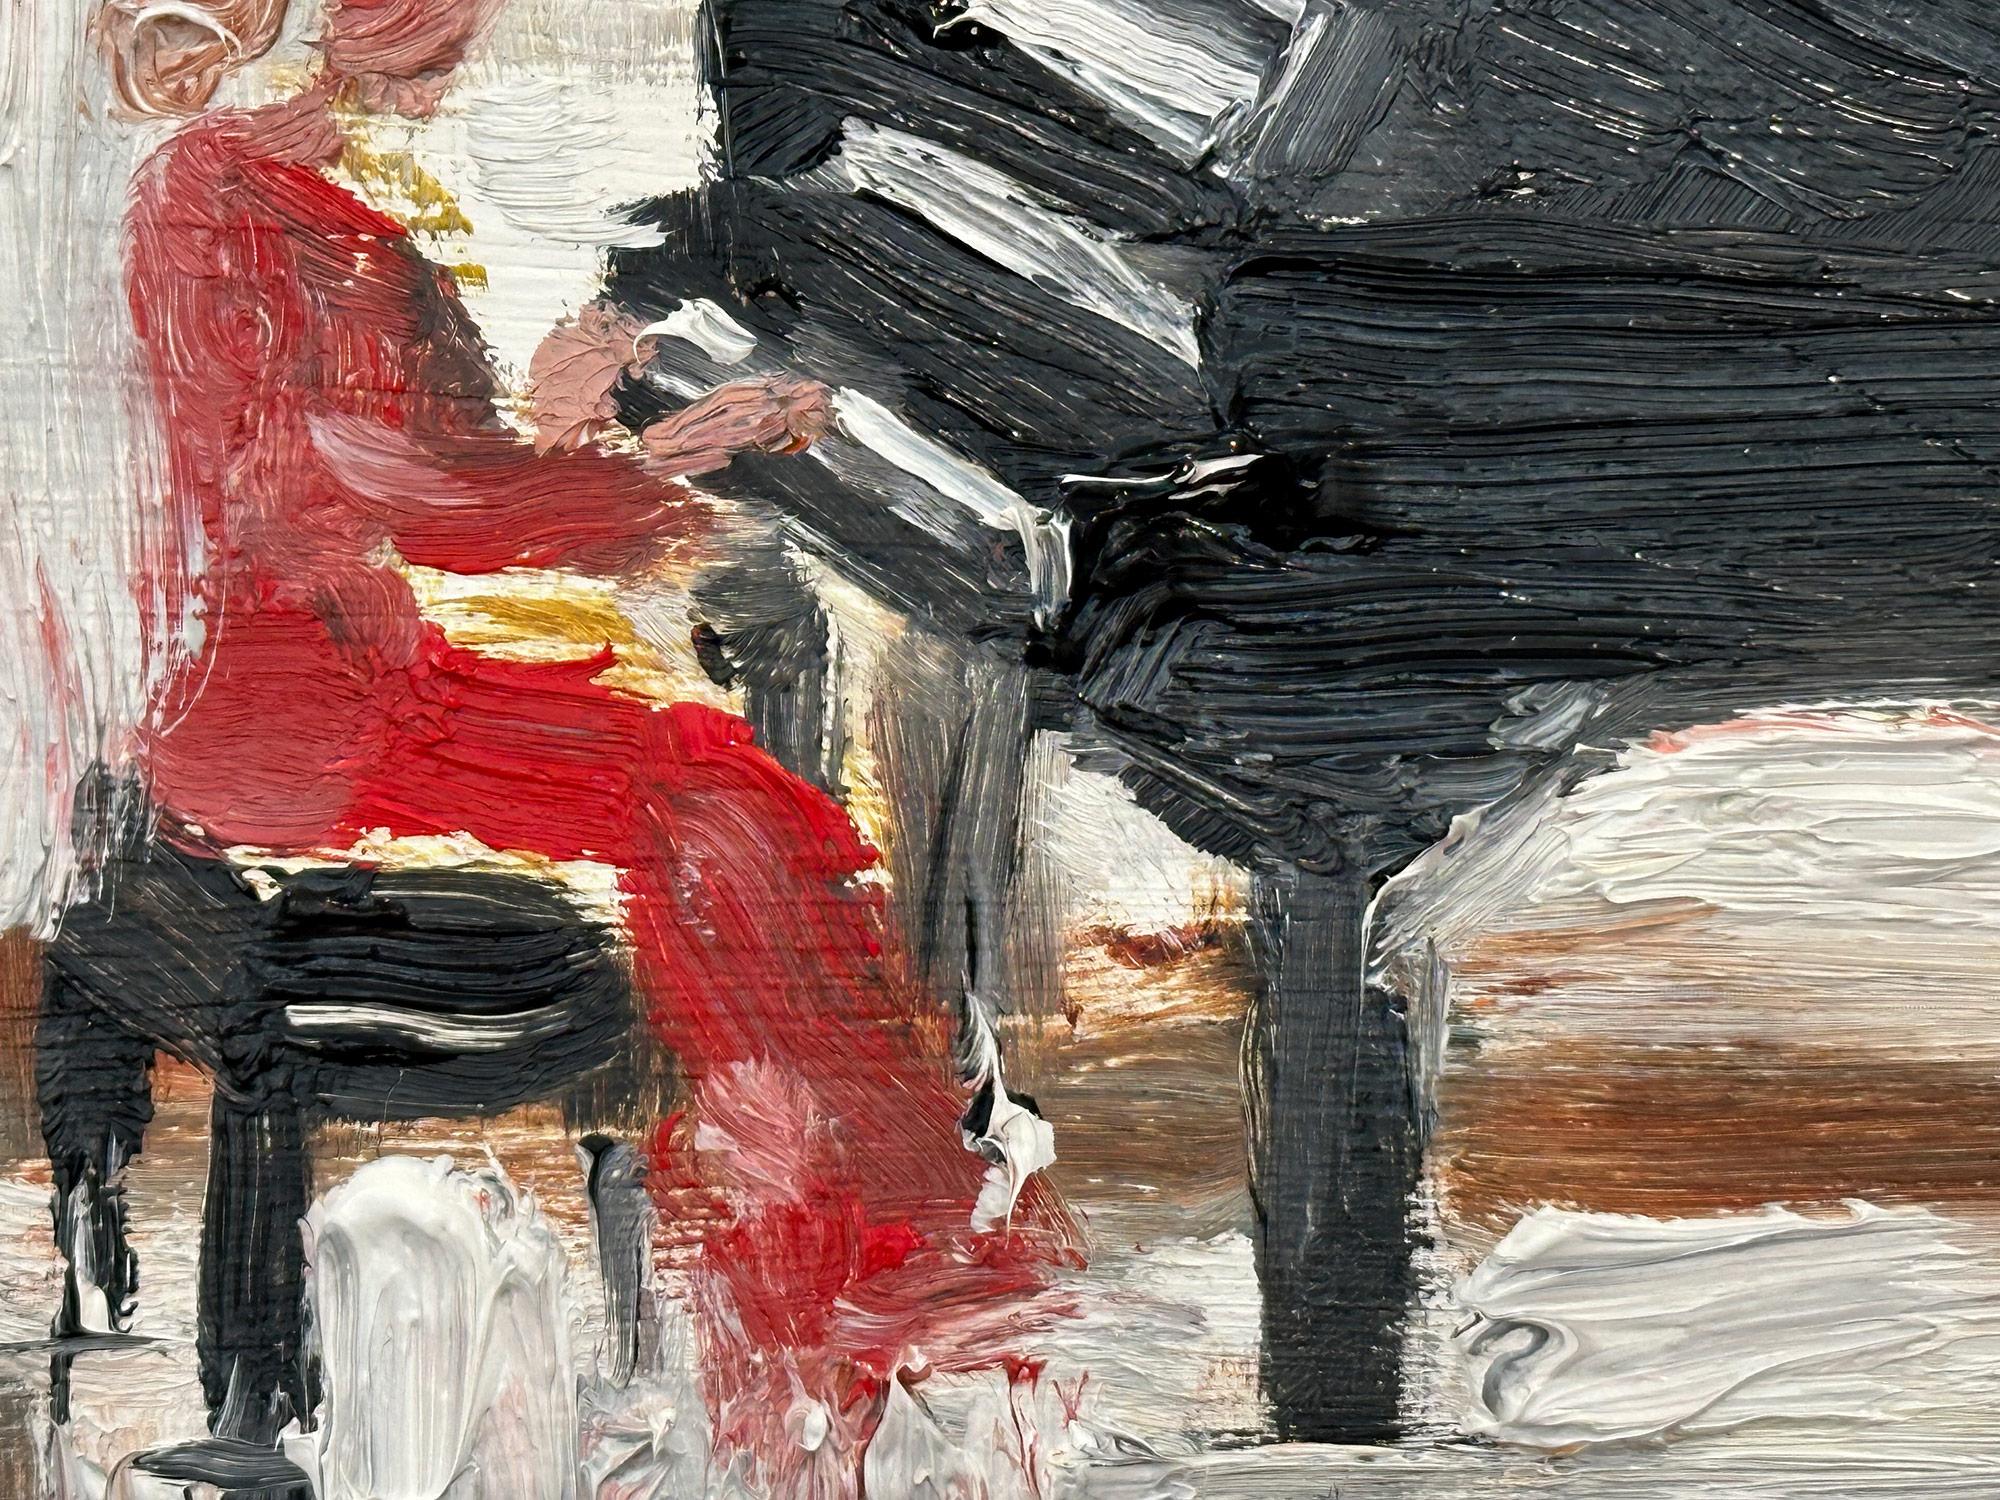 Das Gemälde zeigt eine impressionistische Plein-Air-Szene in Innenräumen, die eine junge Frau in einem roten Kleid beim Klavierspielen zeigt. Die dicken Pinselstriche und spielerischen Zeichen schaffen eine Atmosphäre, die an die Impressionisten des